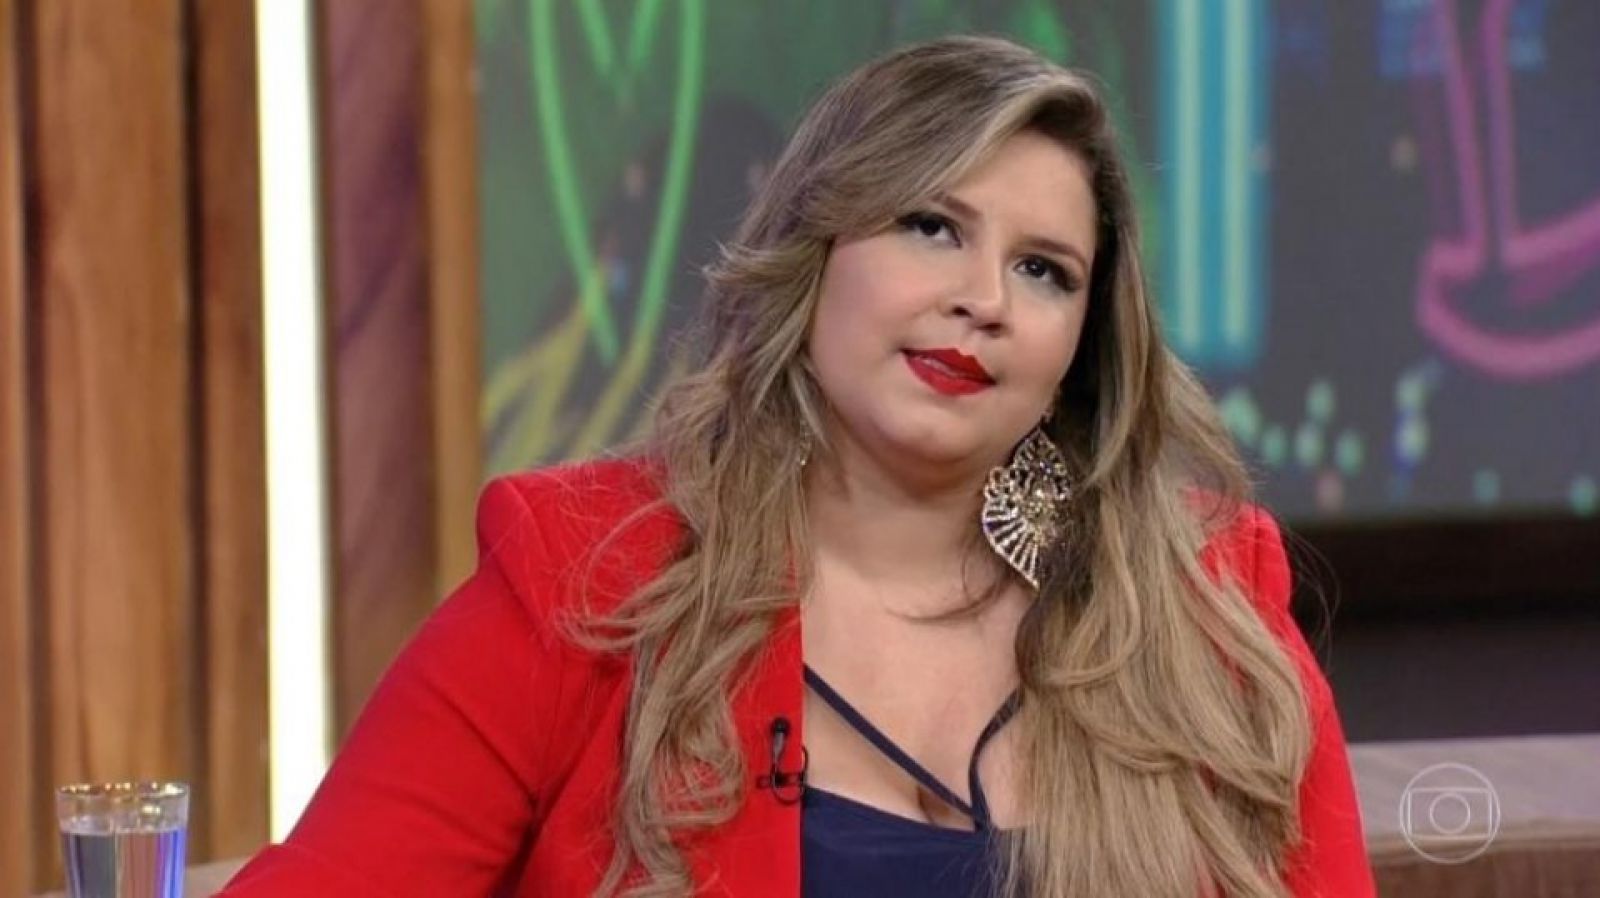 Cantora Marília Mendonça usando blazer vermelho.